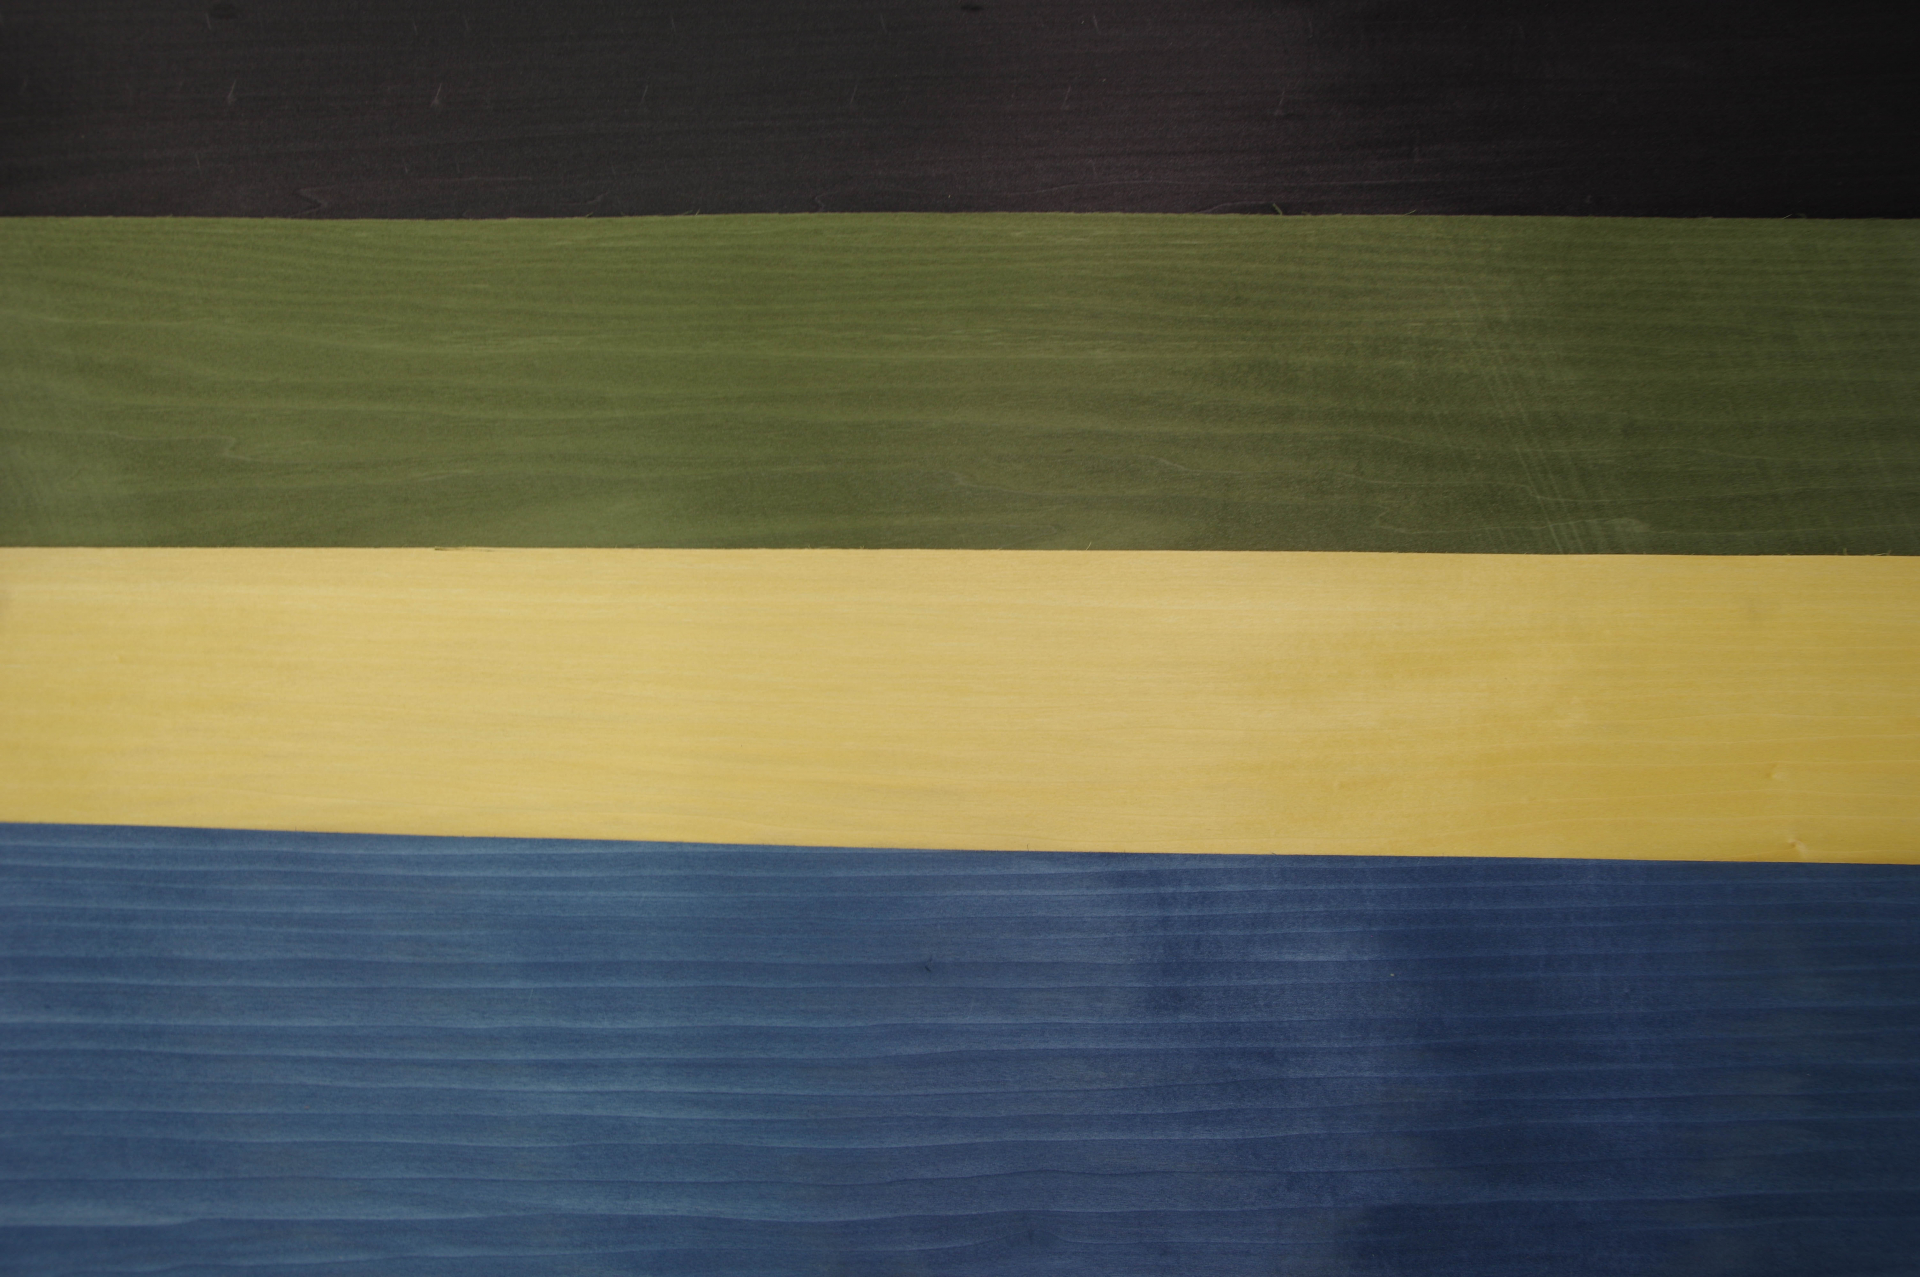 Tulpenbaum 1,01m² blau / 0,97m² gelb / 0,9m² grün /3,08 schwarz gefärbtes-Furnier 5.96m²